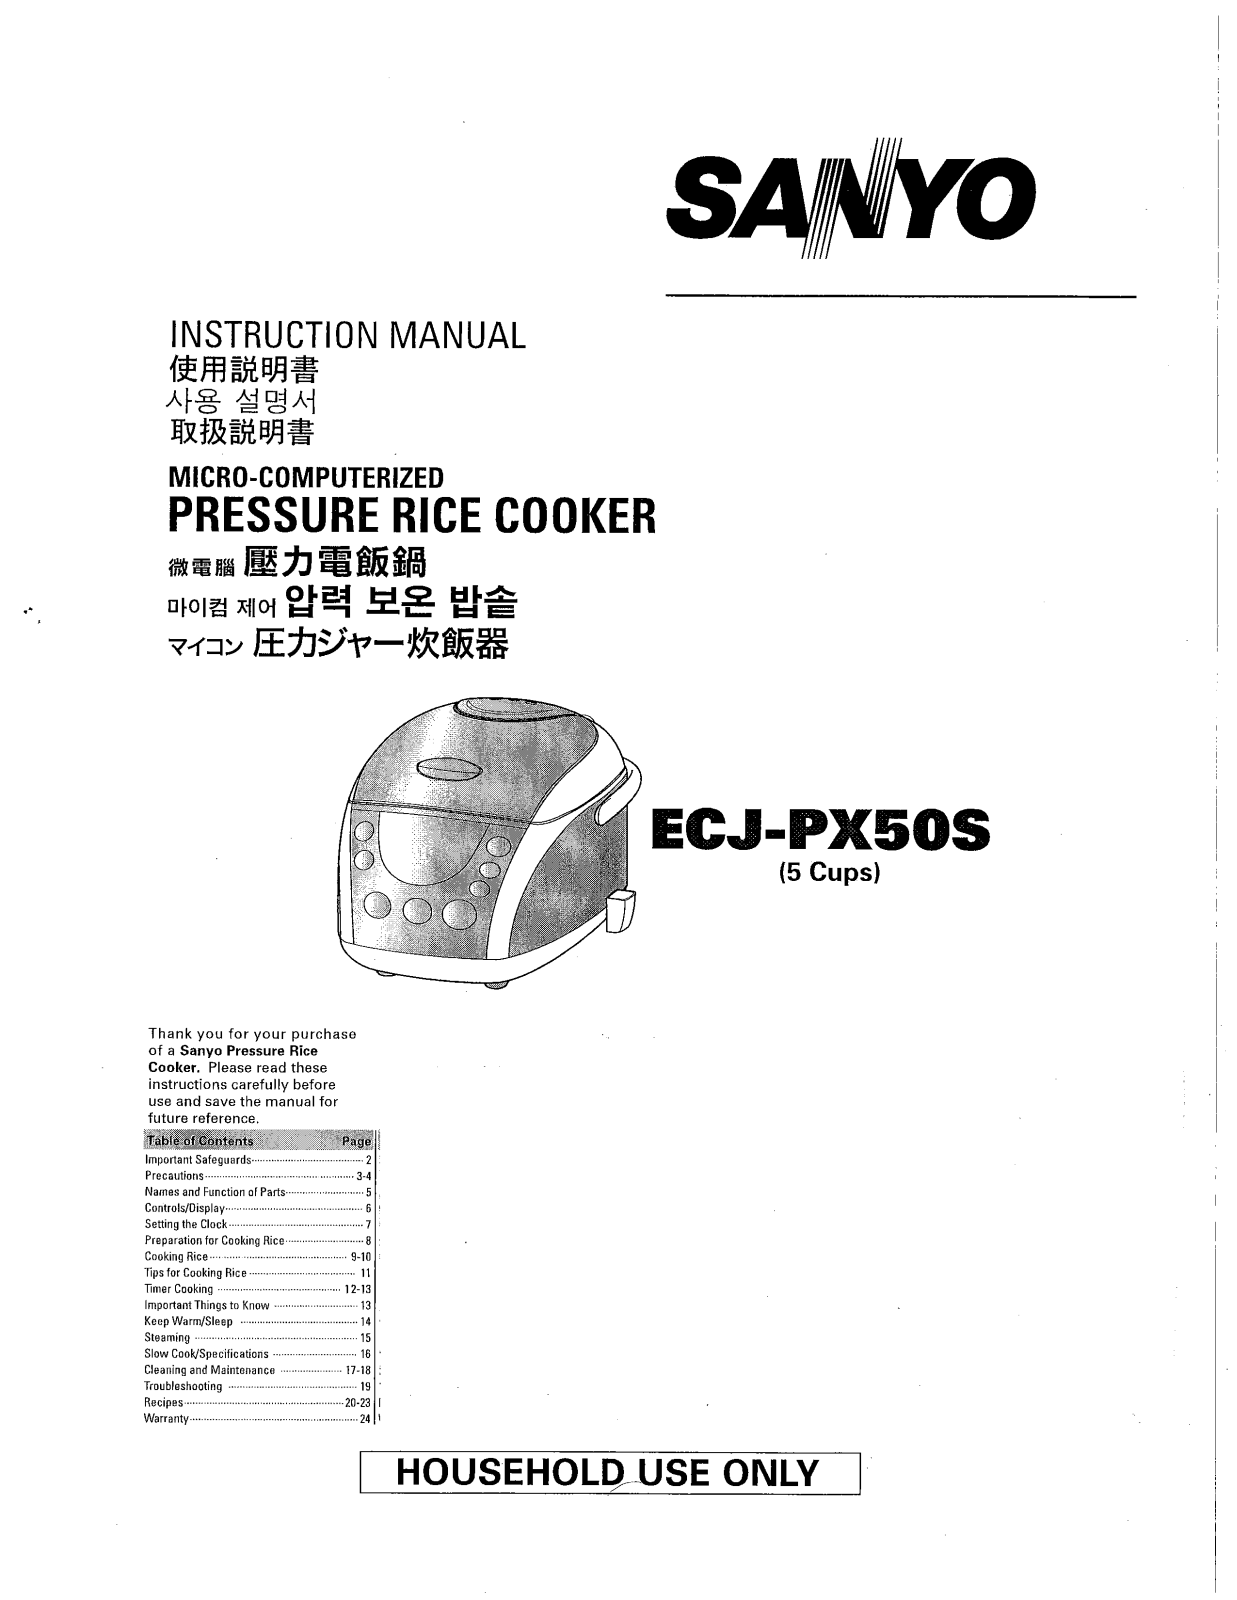 Sanyo ECJ-PX50S User Manual